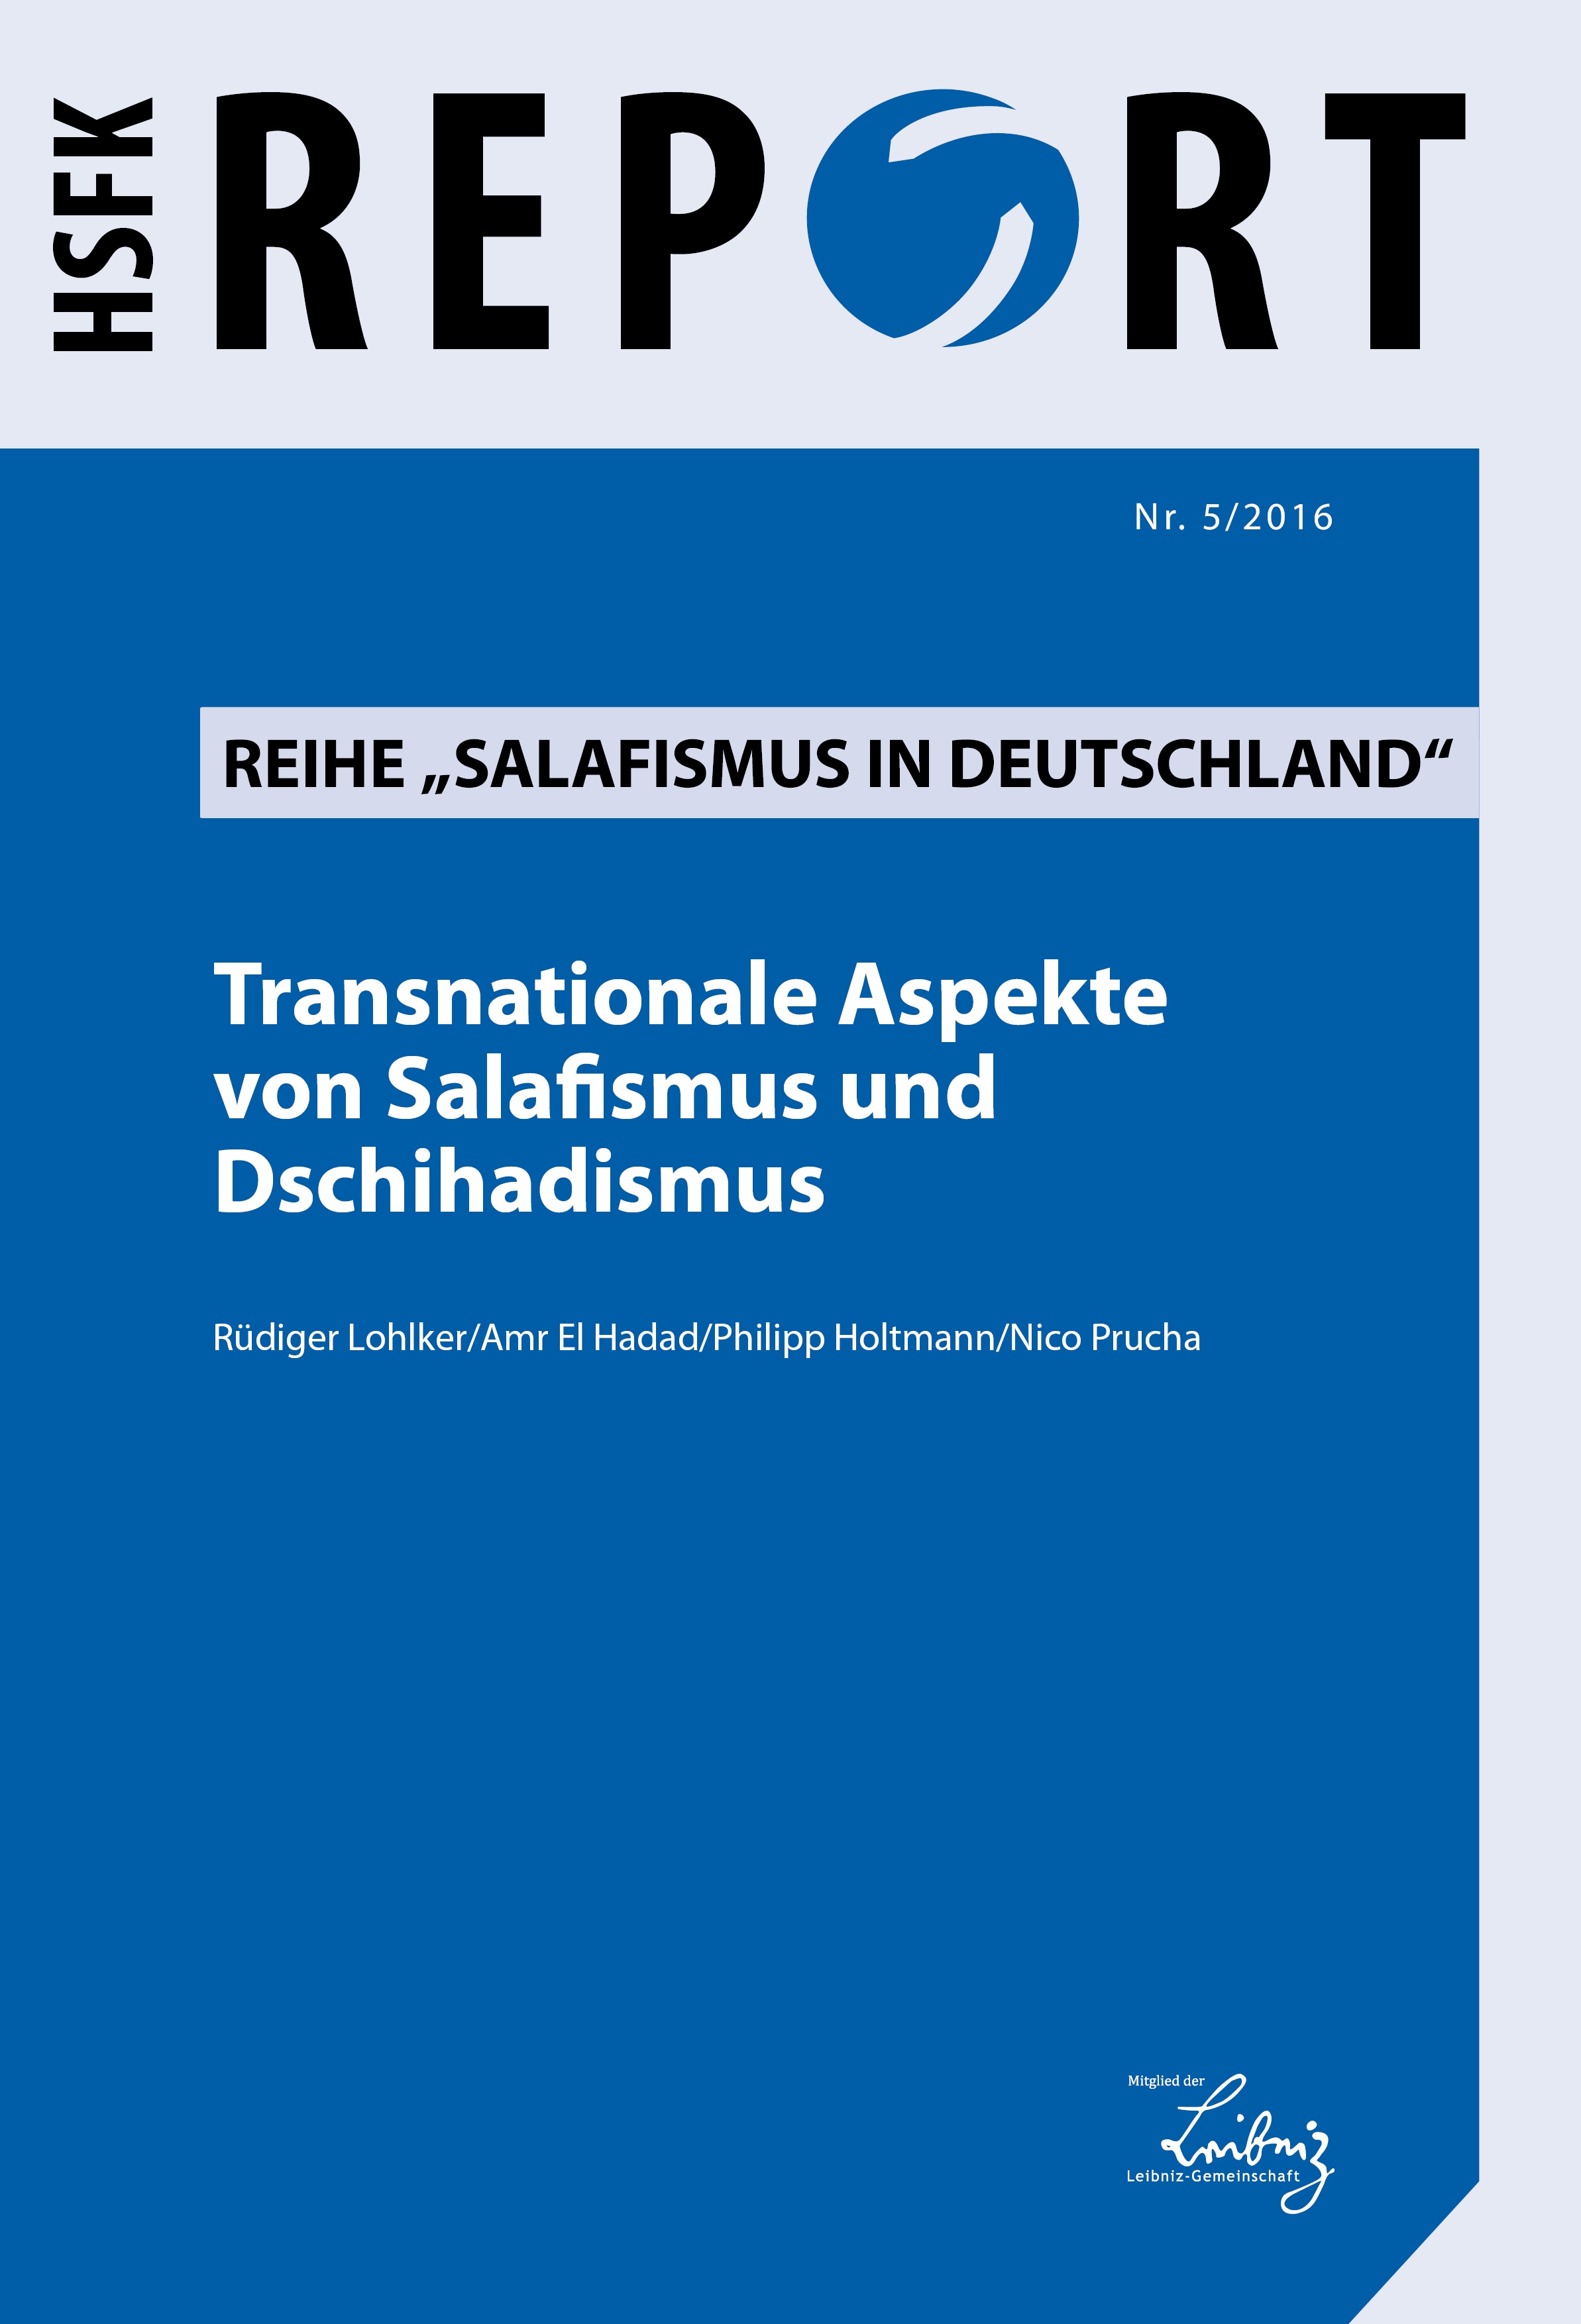 Download: Transnationale Aspekte von Salafismus und Dschihadismus